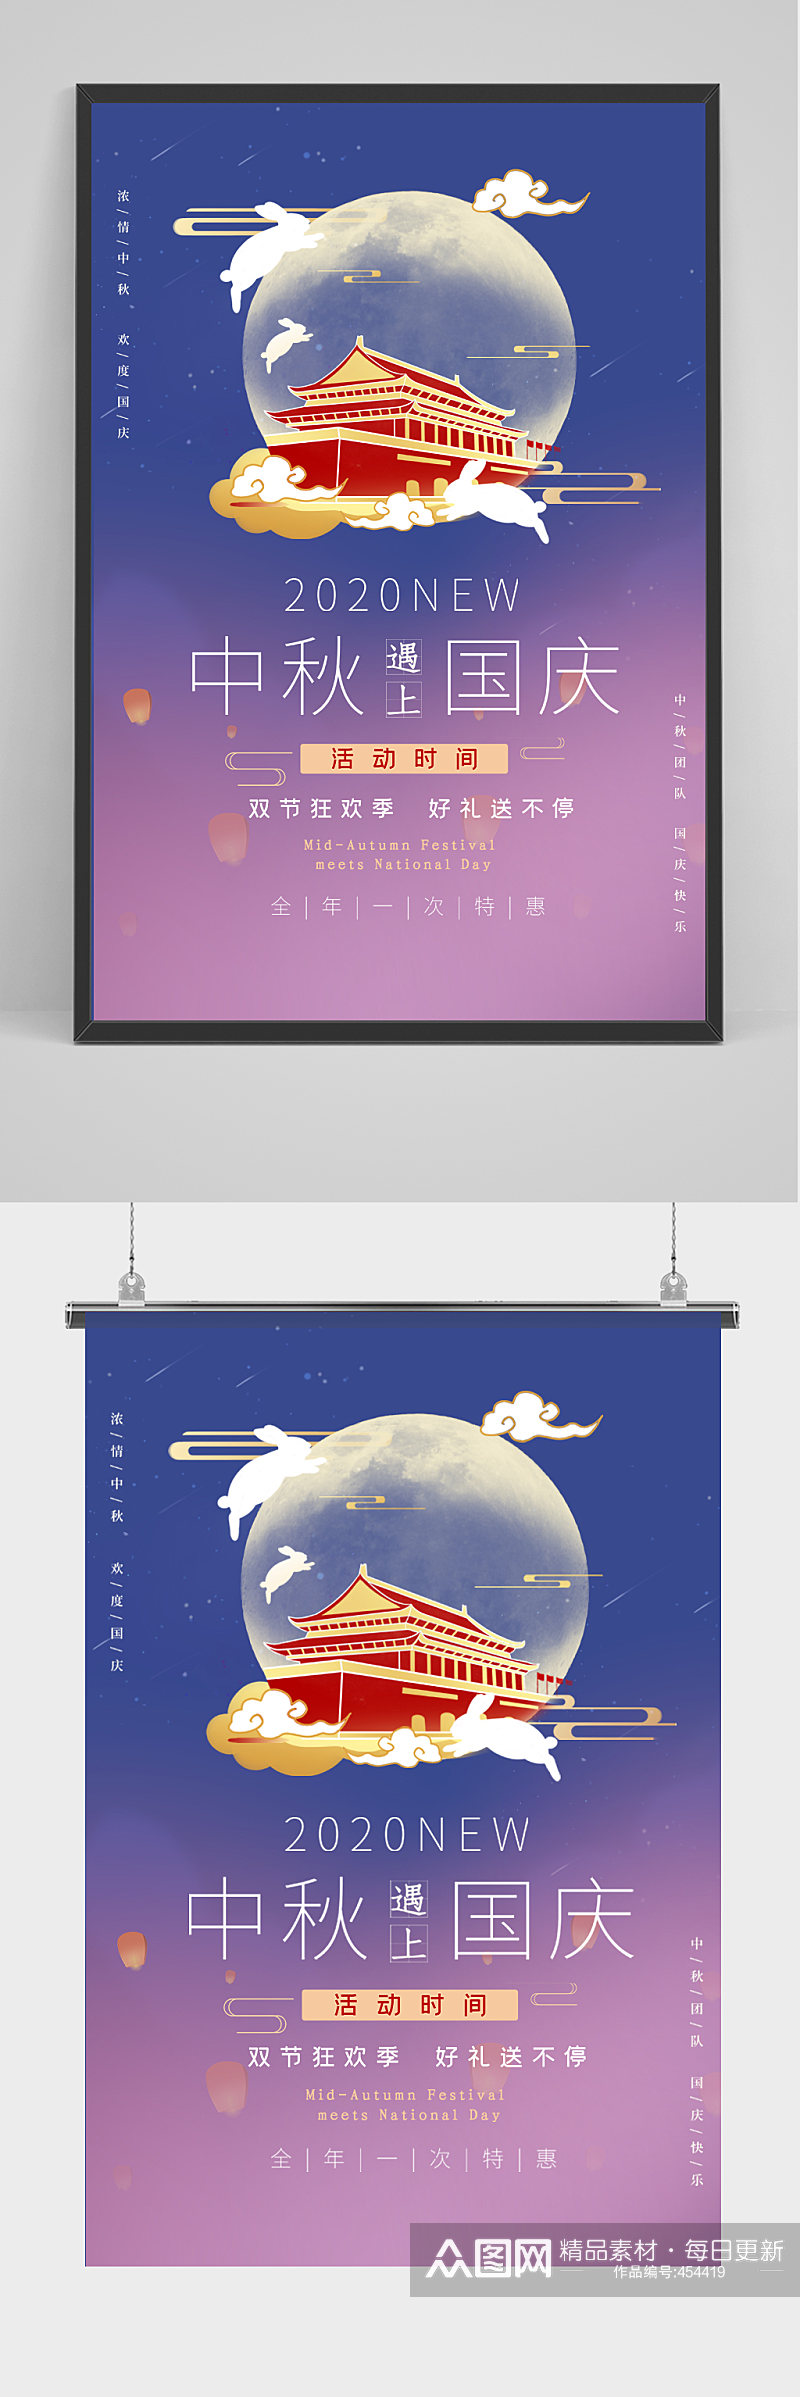 中秋国庆双节海报设计素材